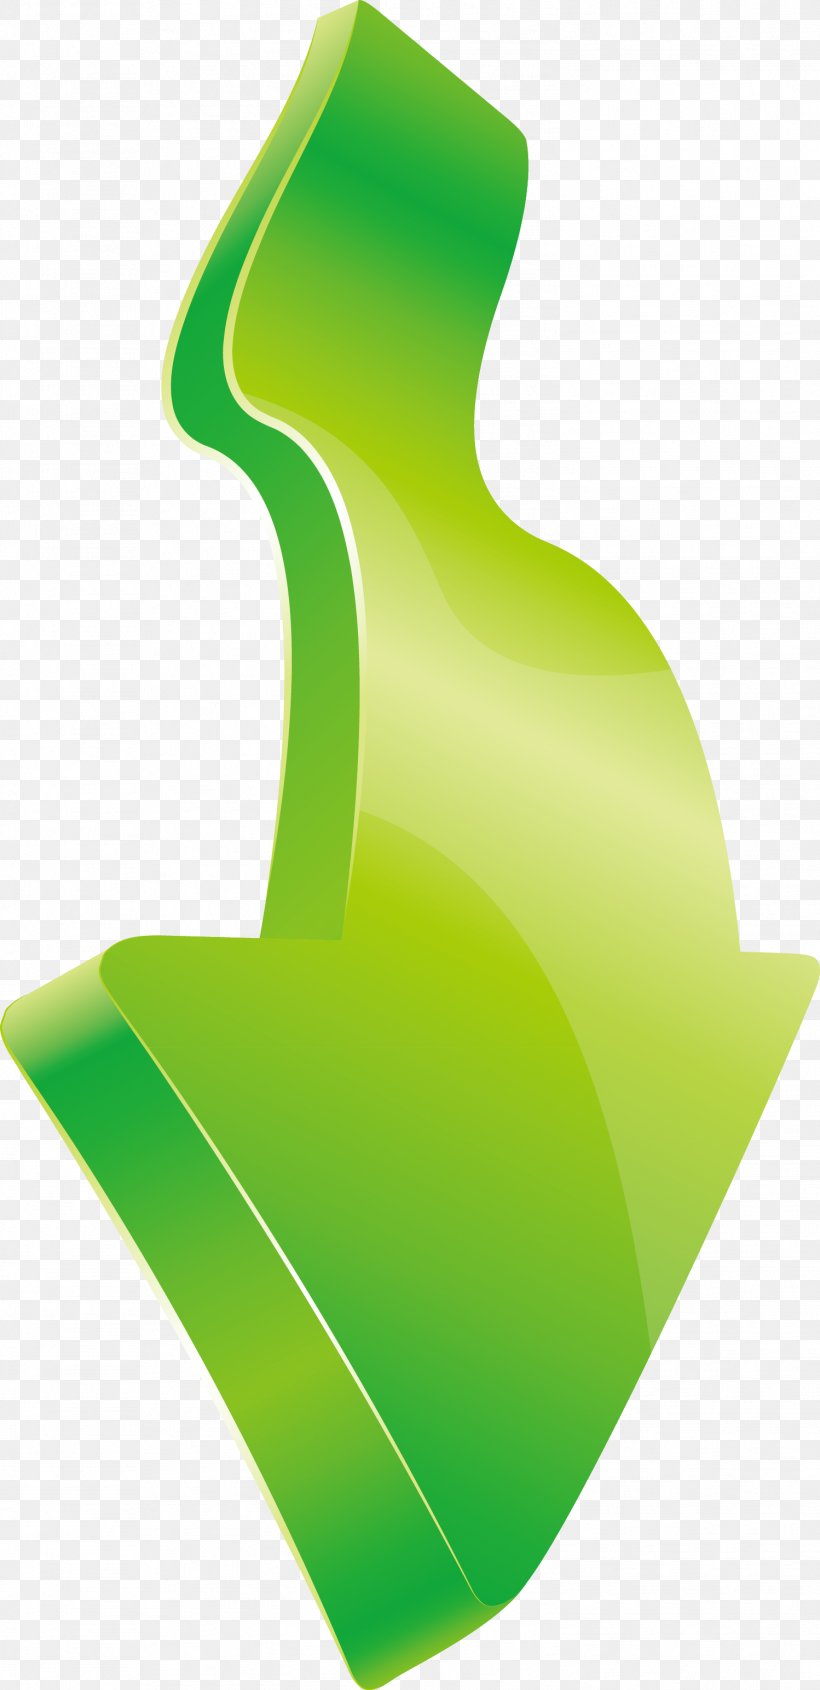 Euclidean Vector Arrow Diagram, PNG, 1498x3088px, Diagram, Computer Network, Element, Green, Logo Download Free